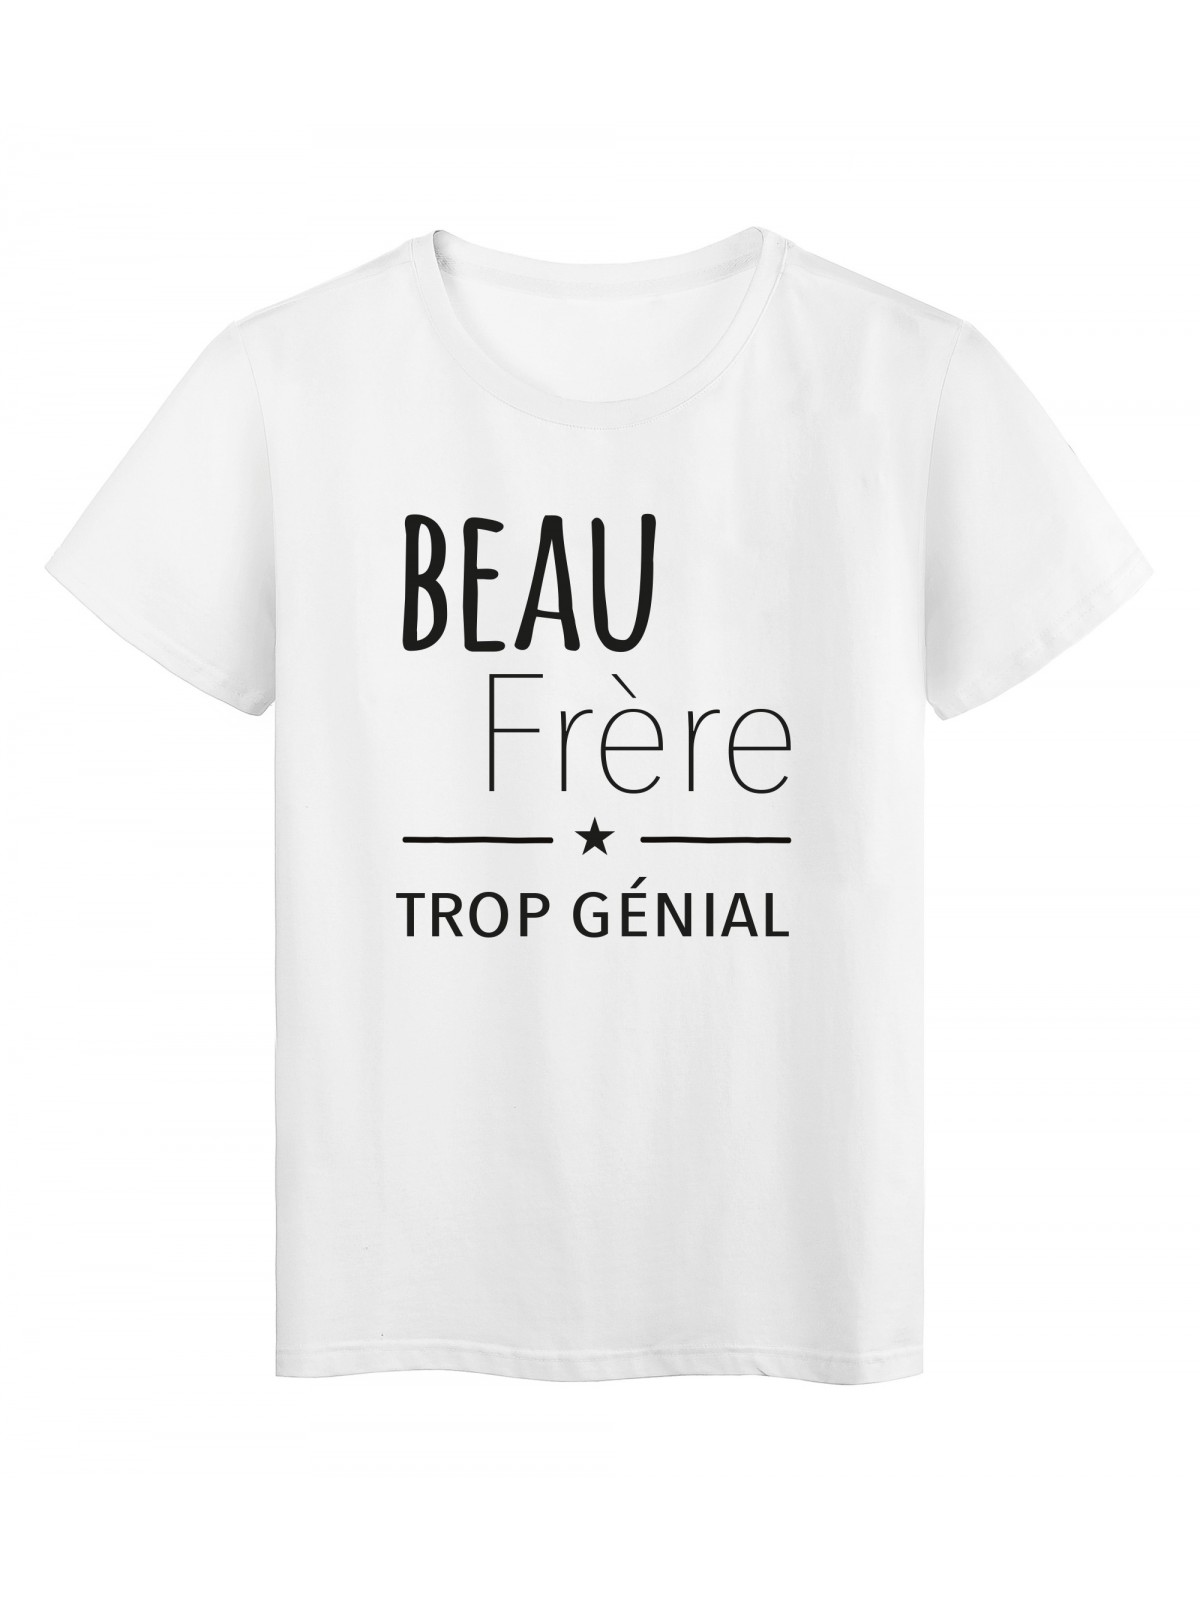 T-Shirt imprimÃ© citation Beau frere trop gÃ©nial